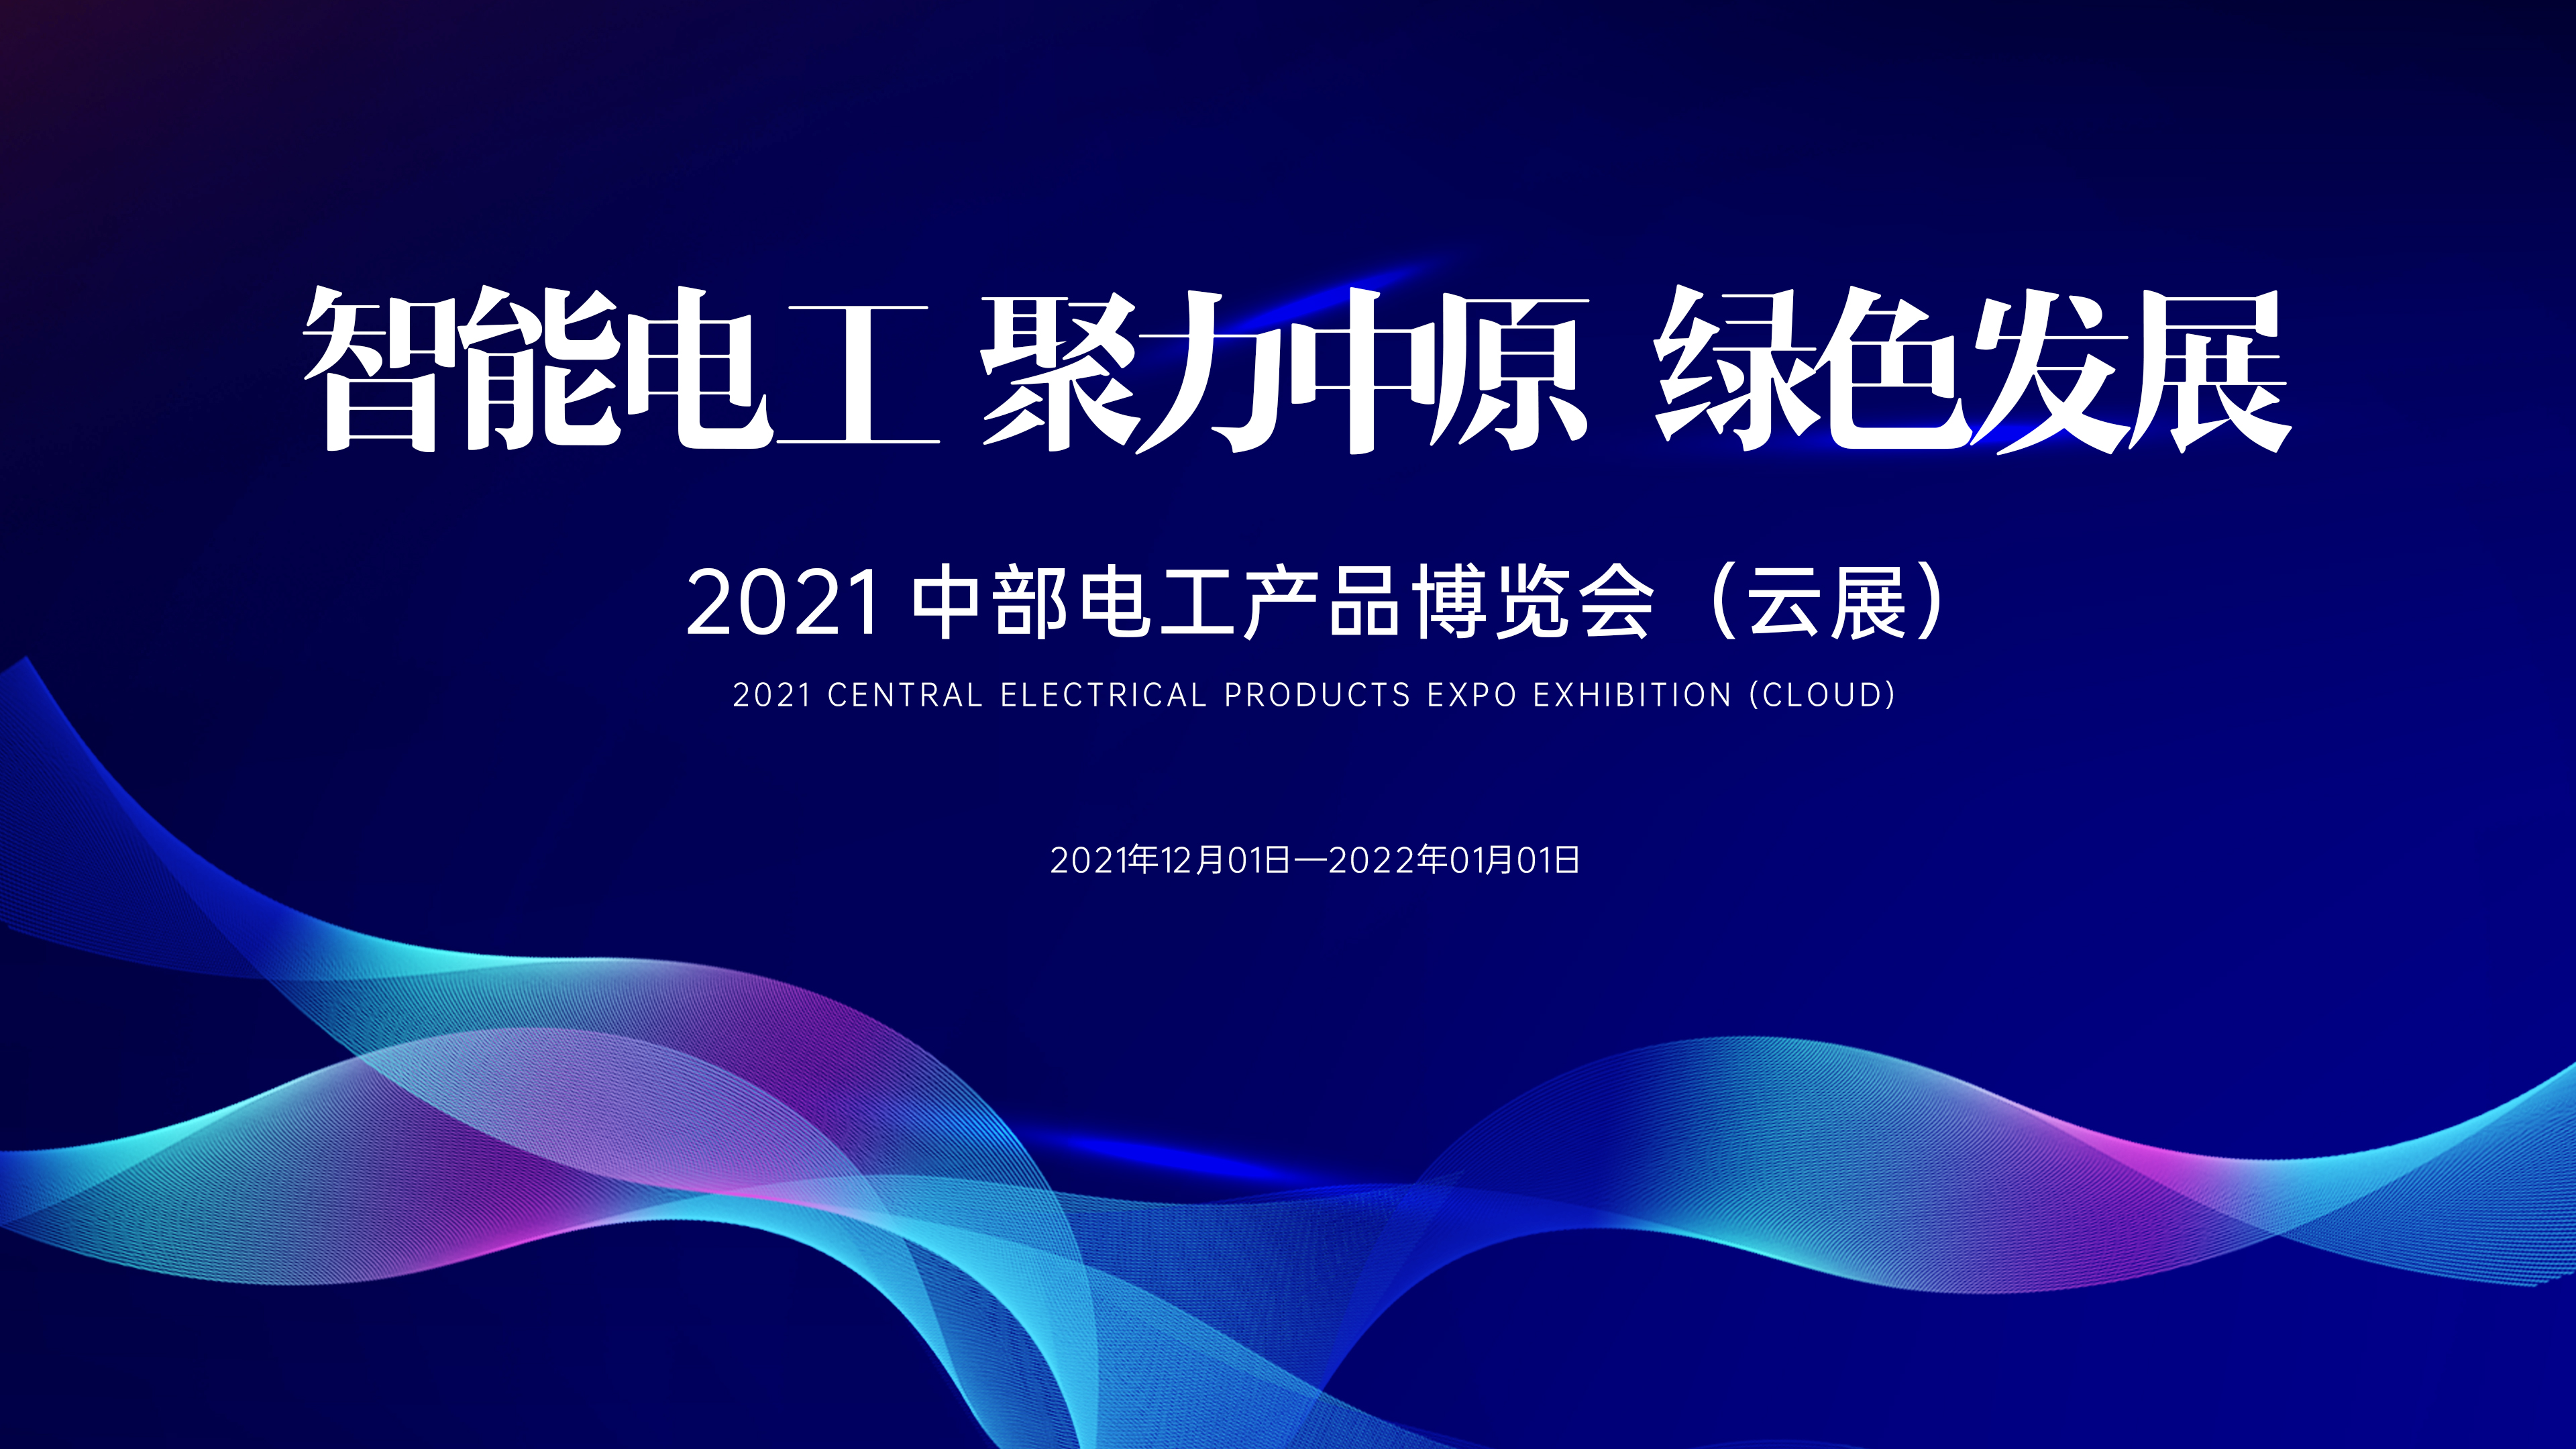 就在明天！2021中部電工產品博覽會（云展）震撼來襲！線上直播與云展入口↘